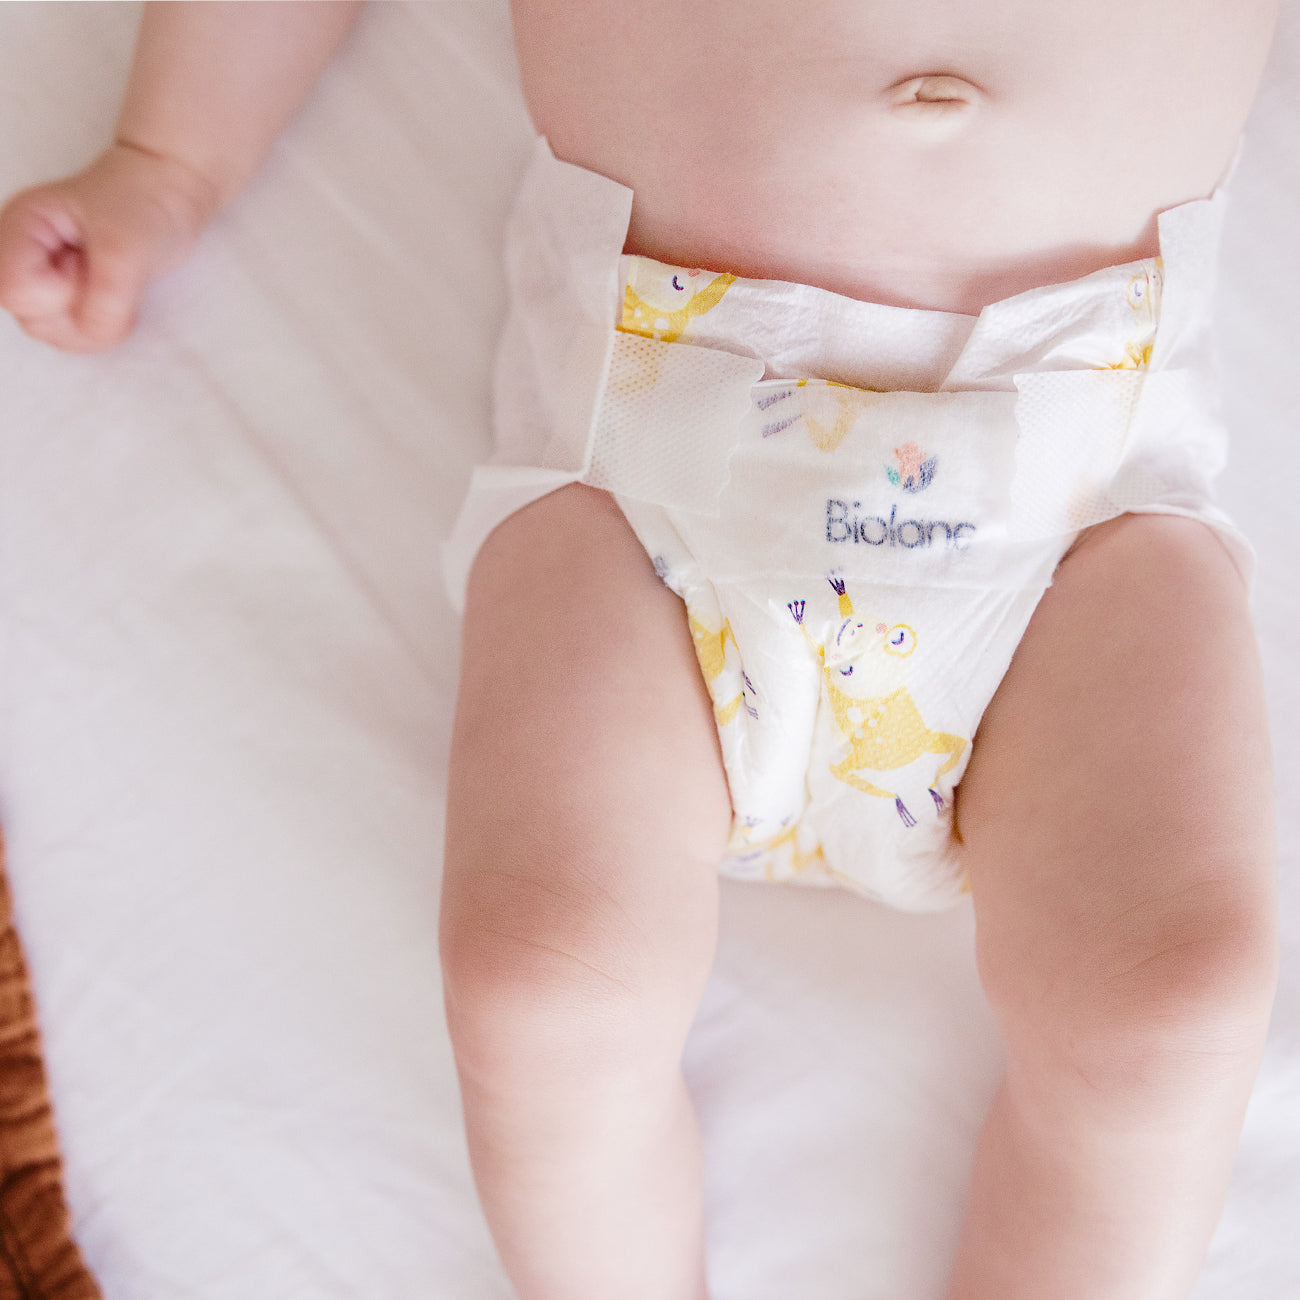 Taille de couche pour mon bébé : Quelle taille choisir pour une couche ?